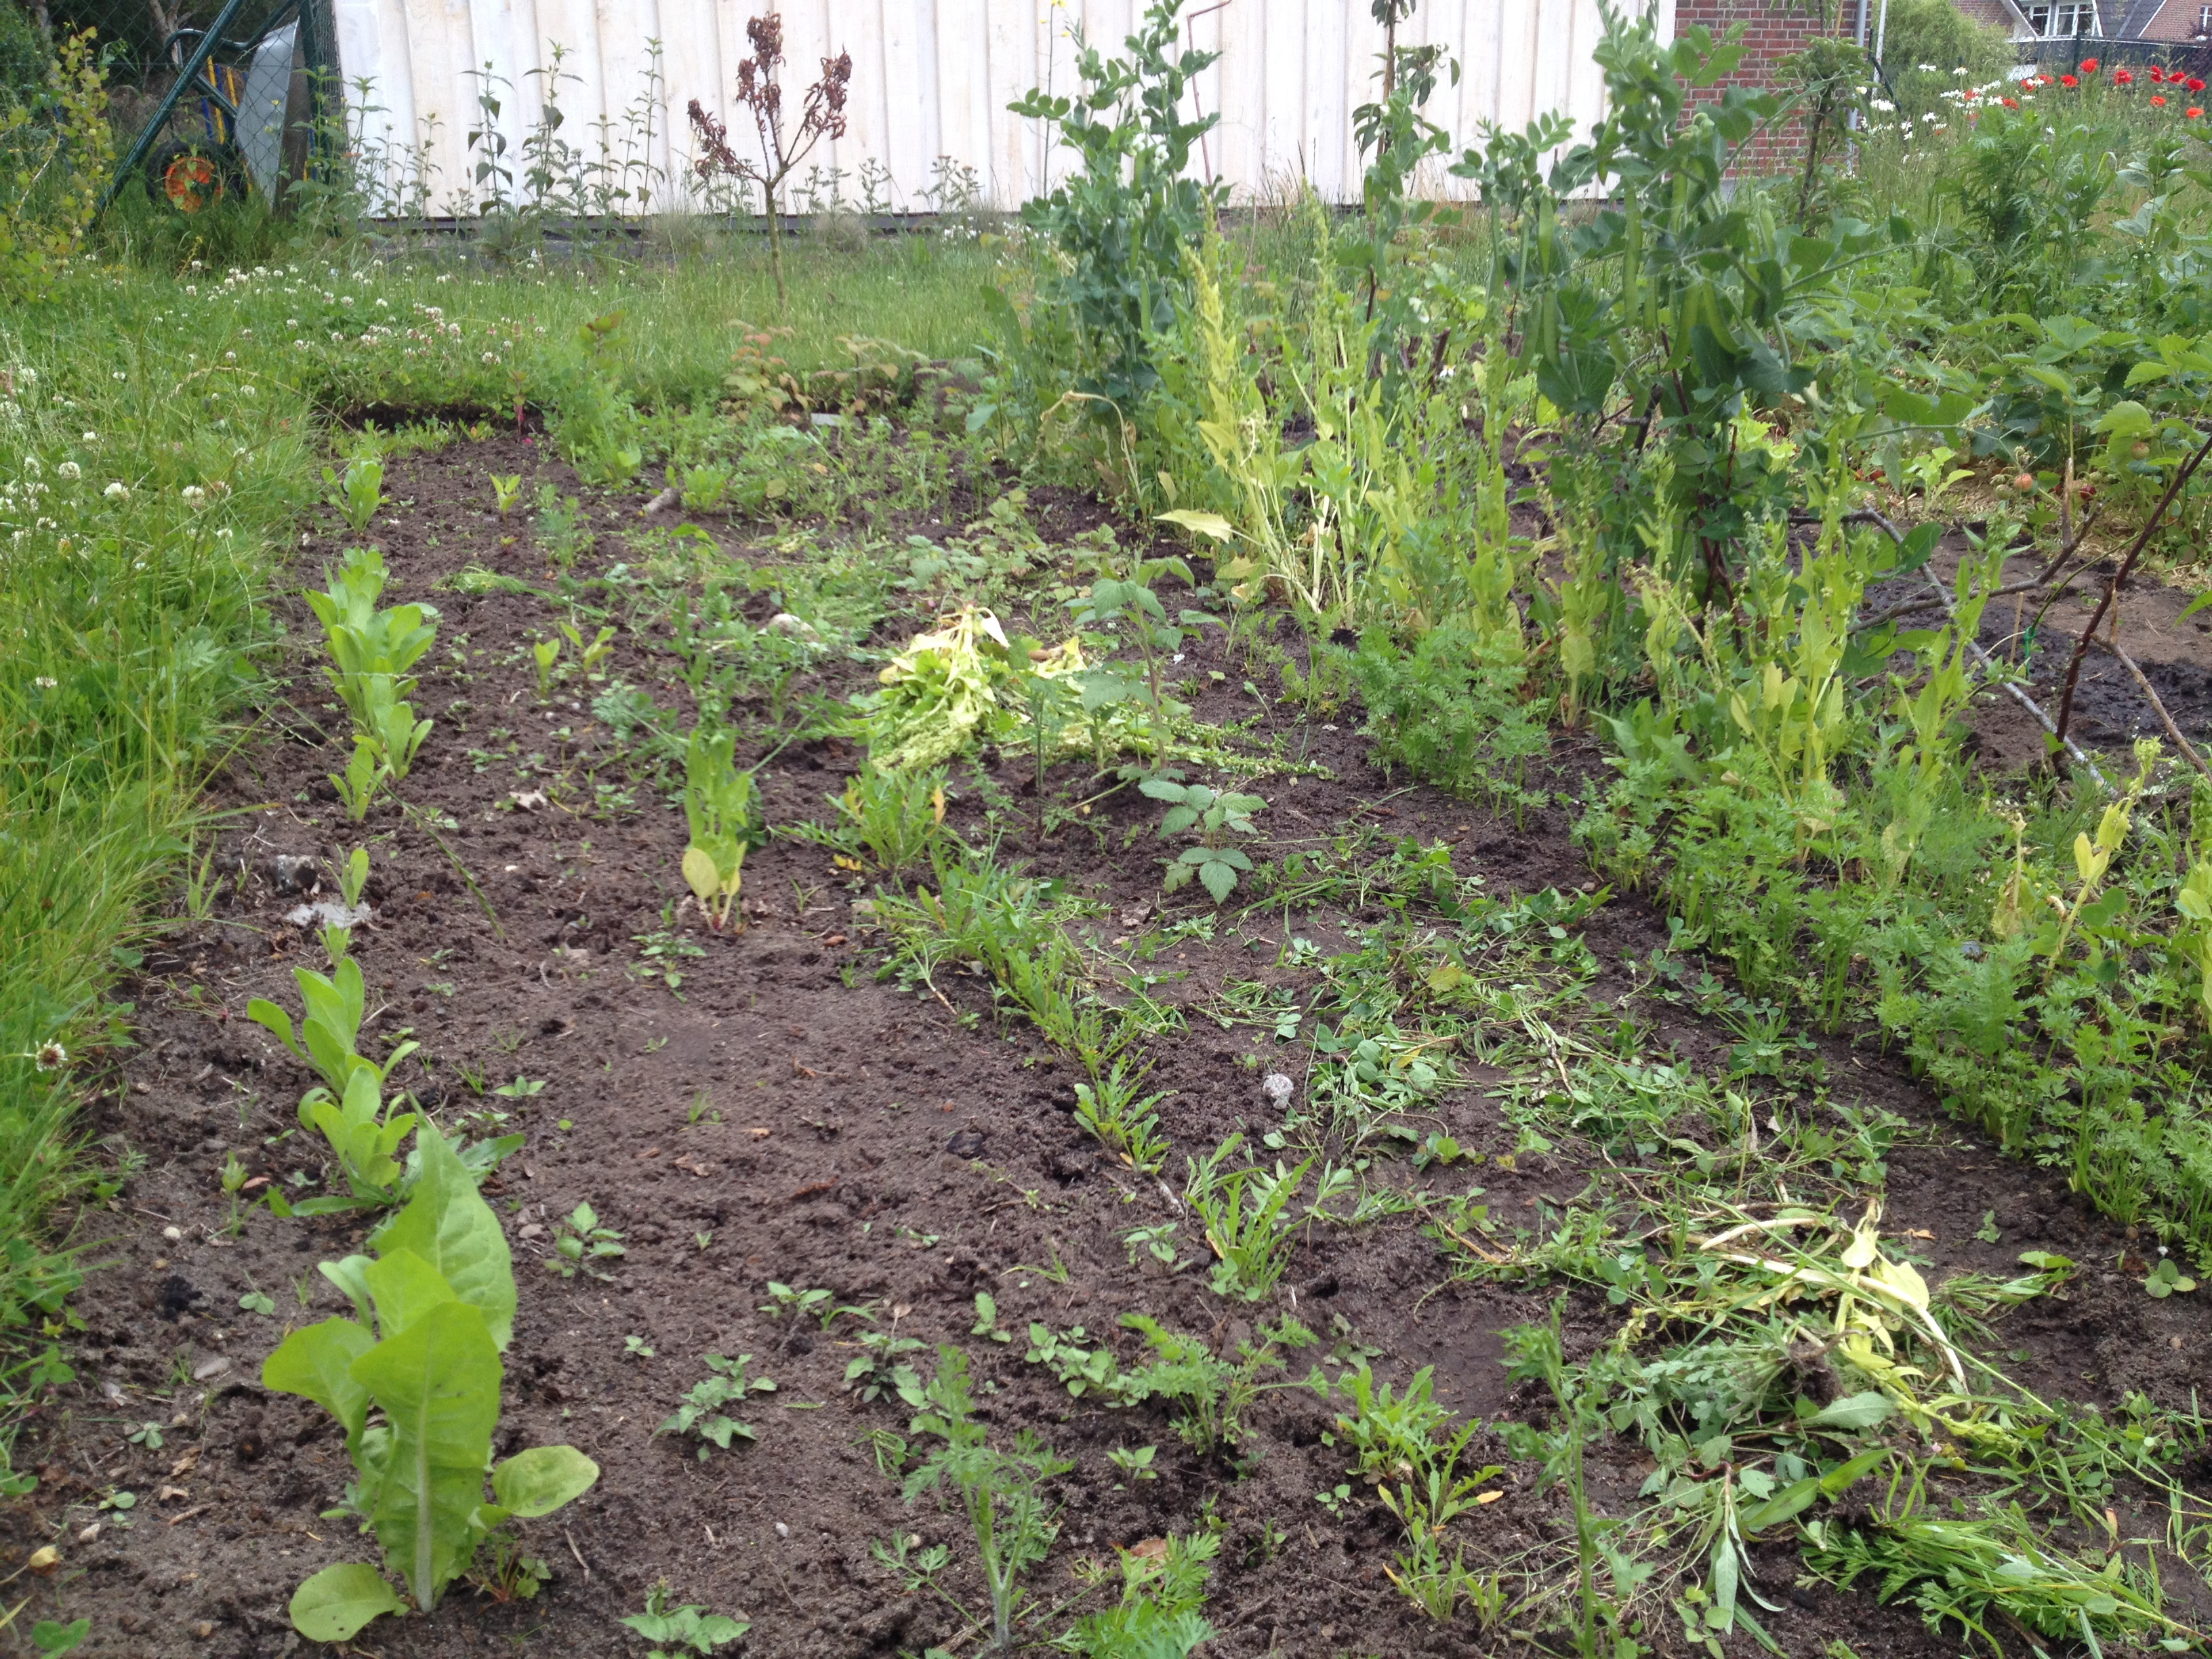 Unser Naschgarten, nachdem ich die ersten drei Reihen gejähtet habe. v.l.n.r: Ringelblumen, Basilikum, Rauke, Möhren und Dill, Spinat, Erbsen, dann lange nur Kram, und (nicht sichtbar) Salat und Erdbeeren. Hinten sieht man die dicken Bohnen noch. 